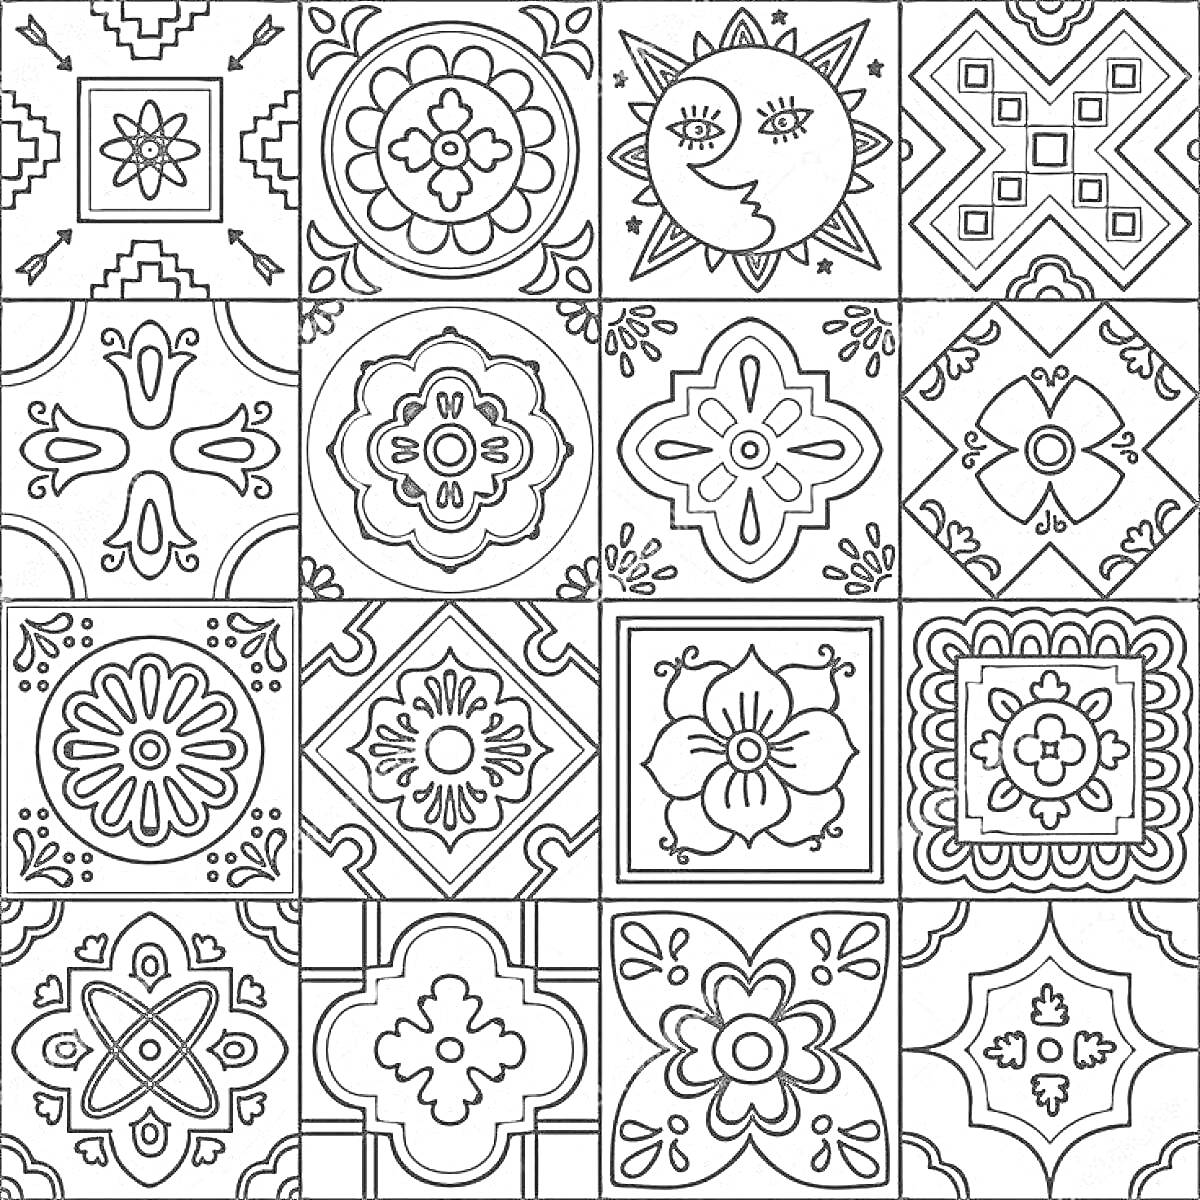 Керамические плитки с цветочными узорами, геометрическими фигурами и изображением солнца и луны